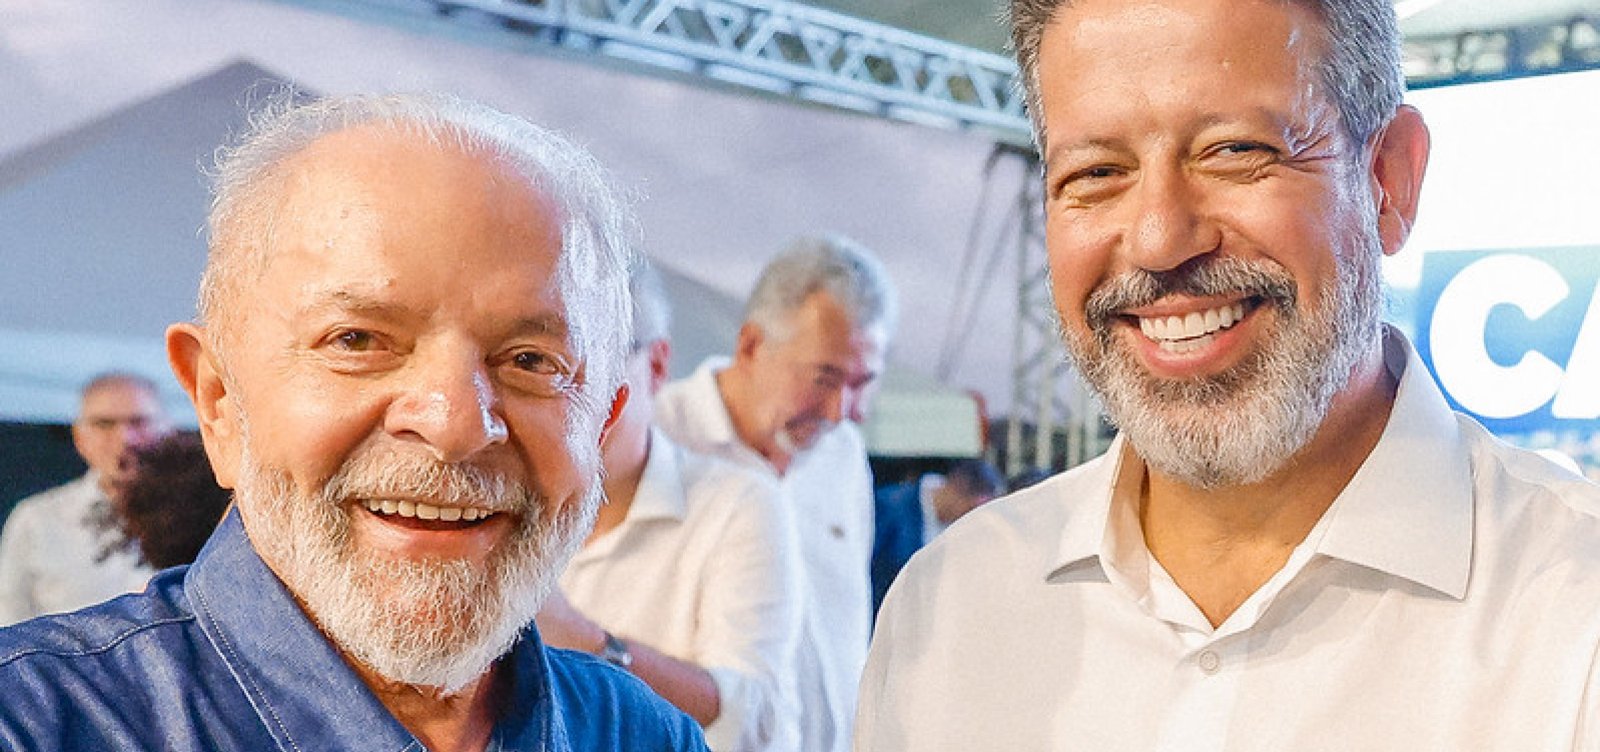 Arthur Lira é vaiado durante evento ao lado de Lula: "falta de respeito"